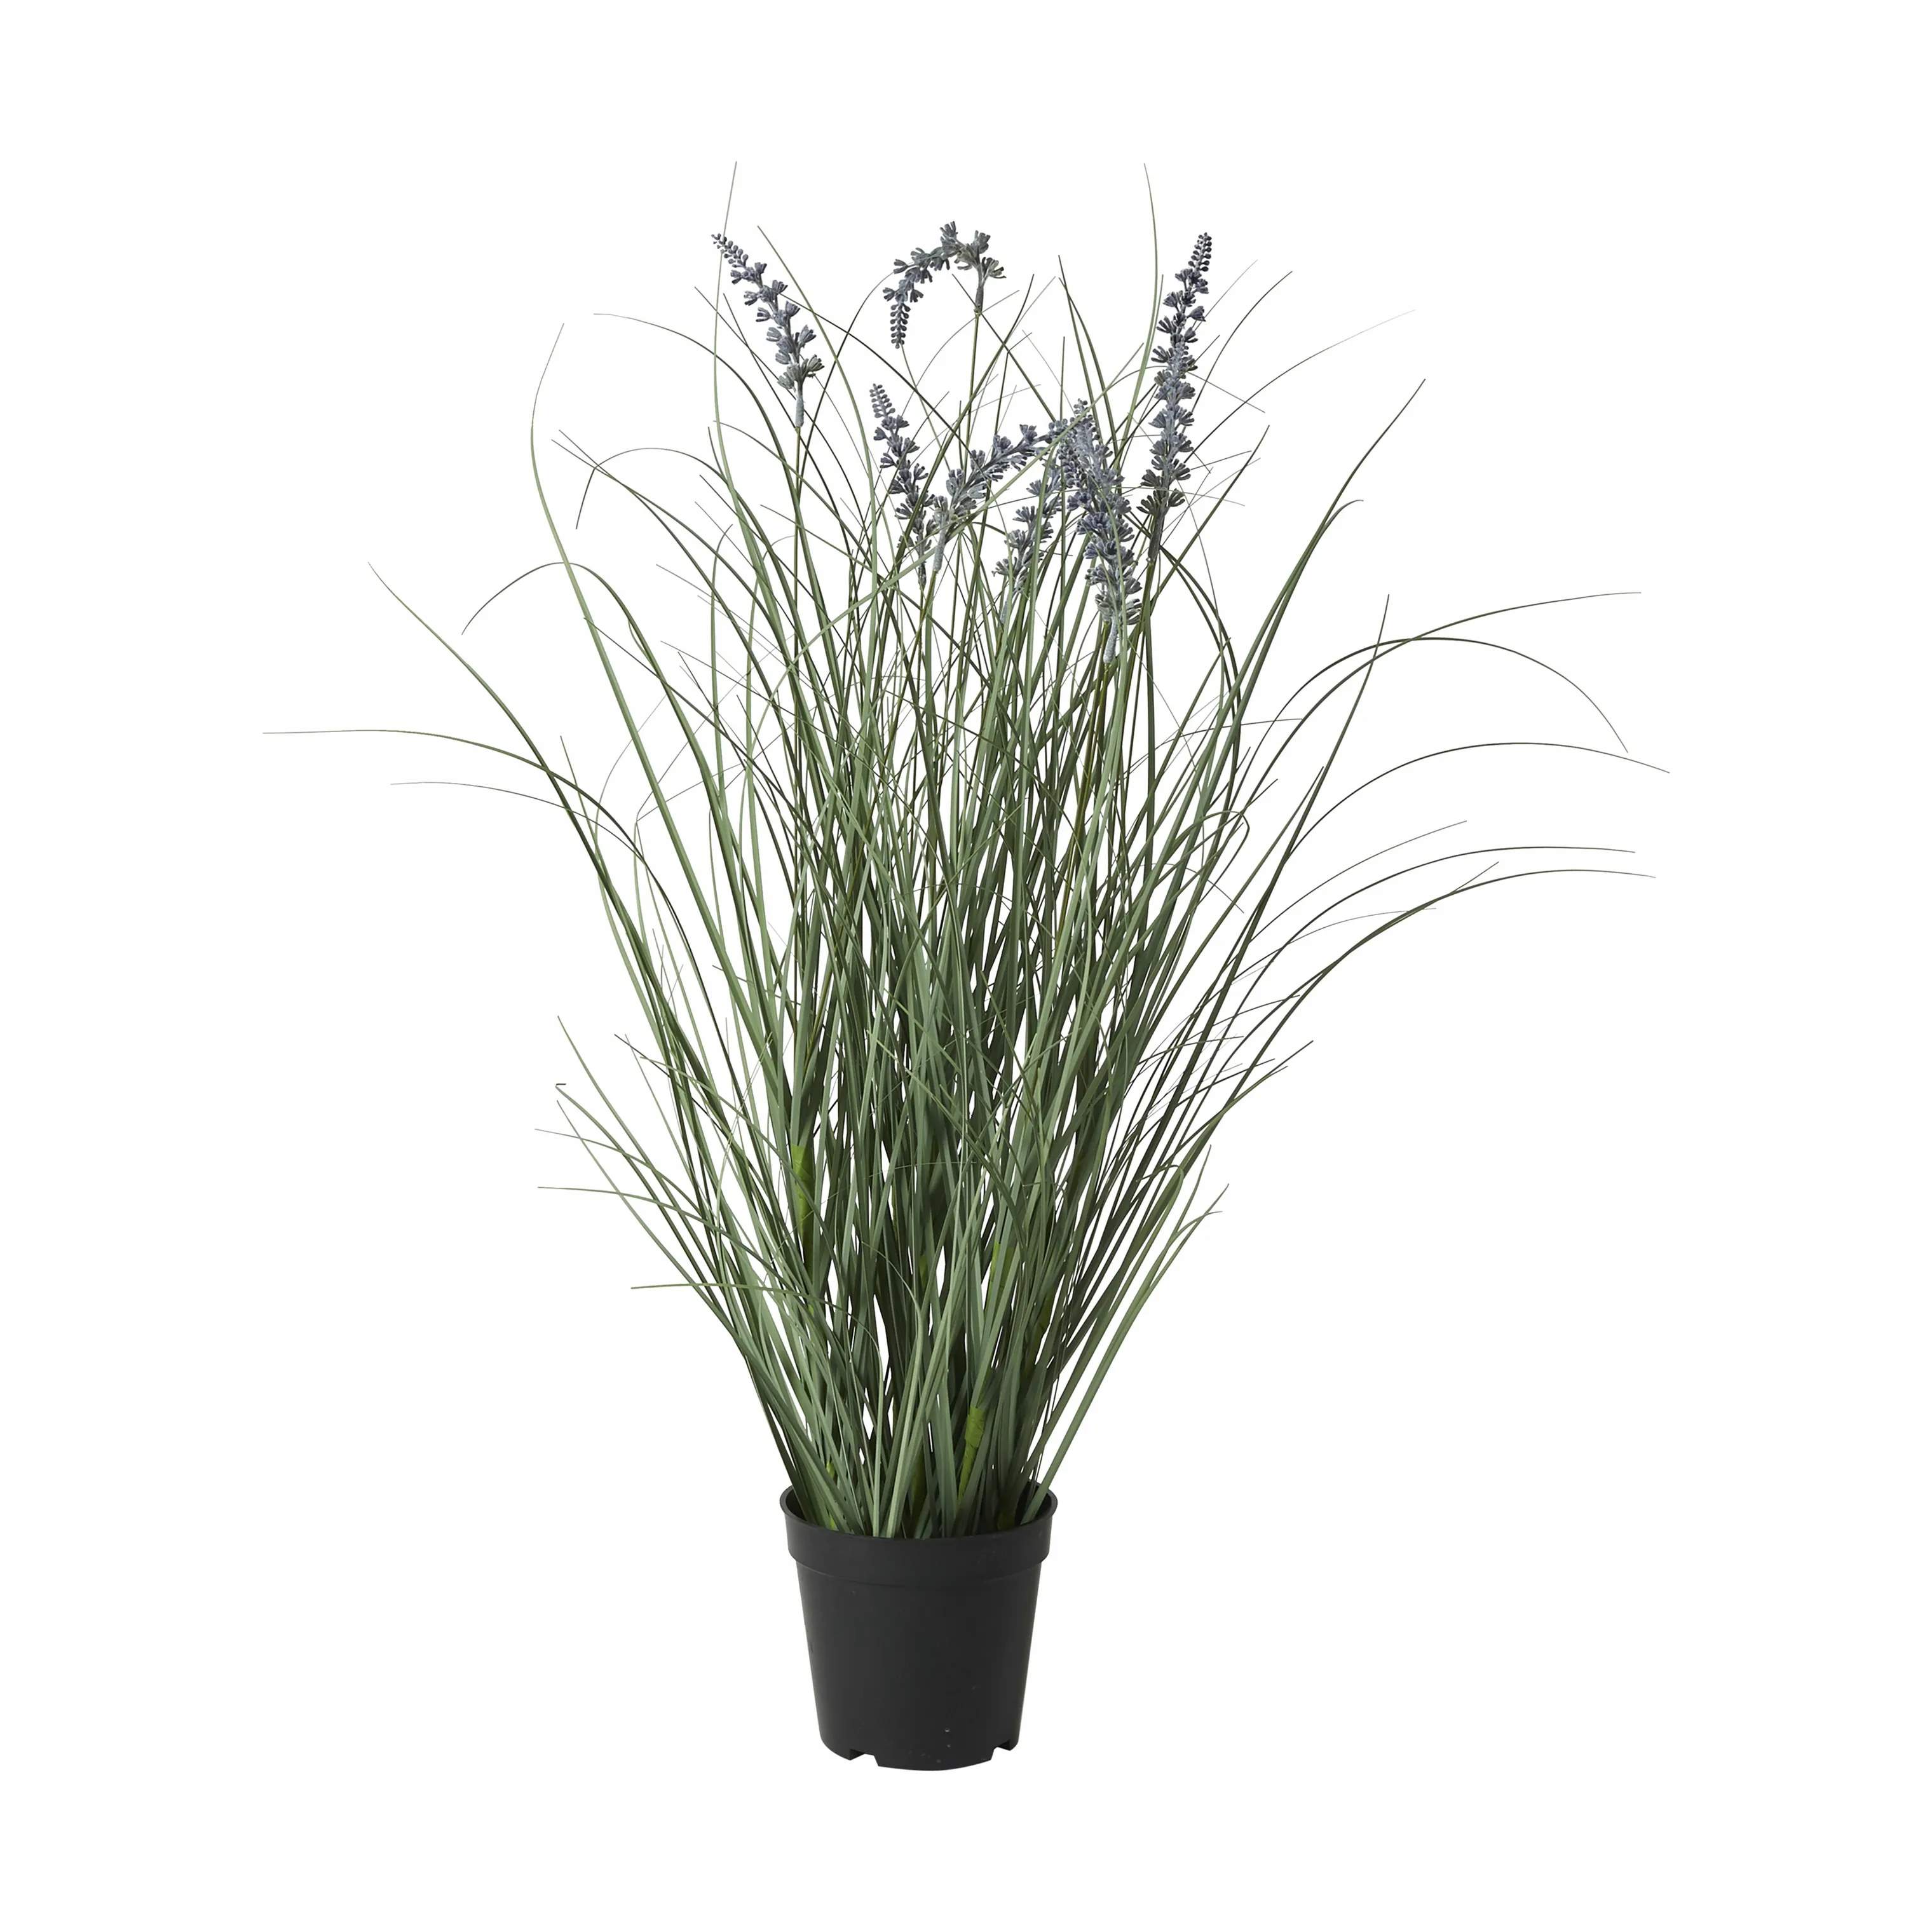 Kunstig Plante - Lavendel, grøn/lilla, large